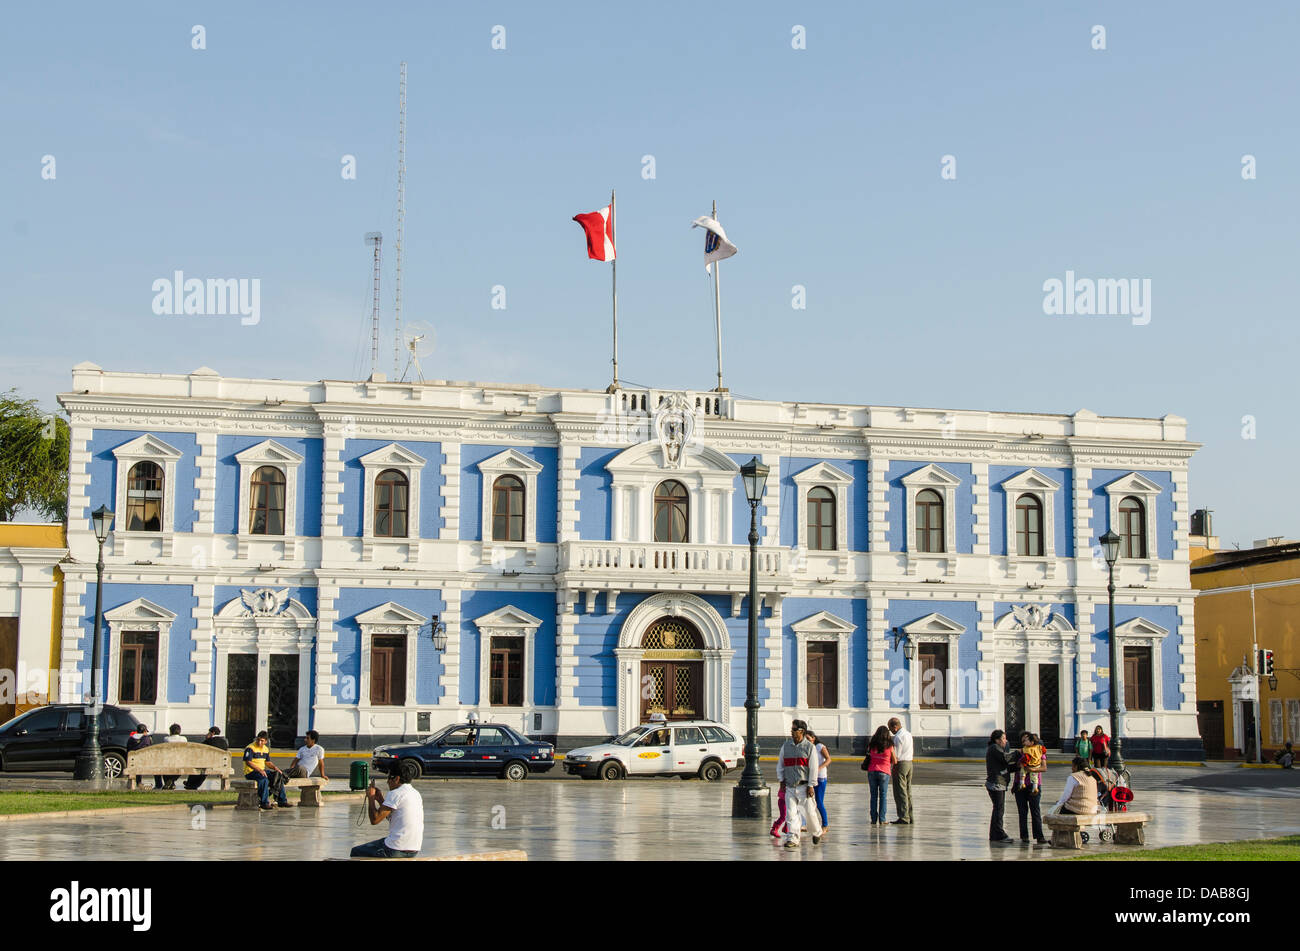 Les bureaux municipaux d'architecture espagnole coloniale ouvragée bâtiment en face de la Plaza de Armas, Trujillo, Pérou. Banque D'Images